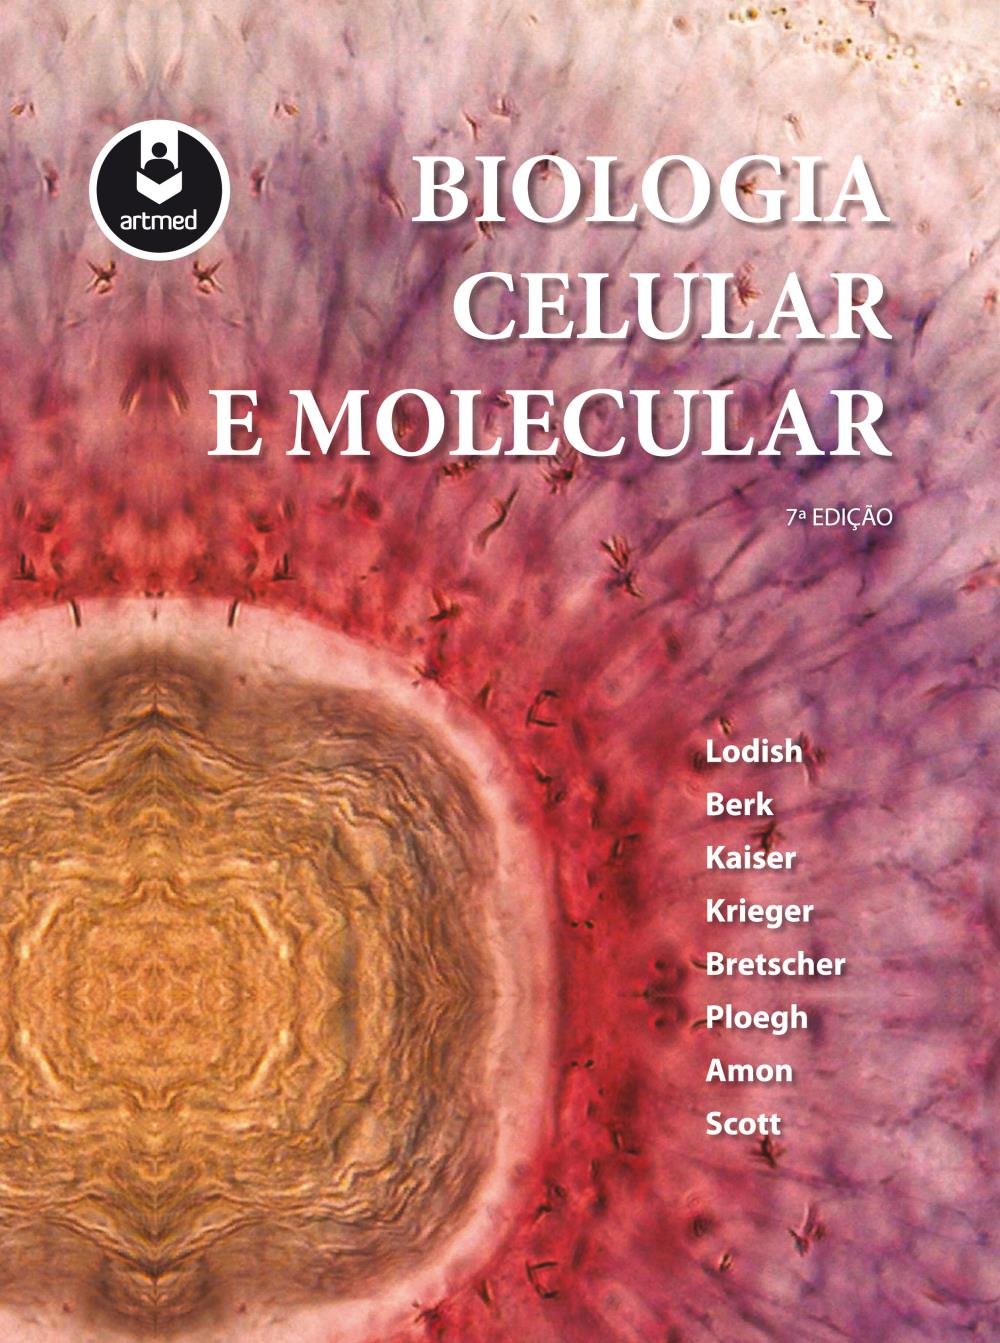 biologia celular e molecular carlos azevedo pdf free